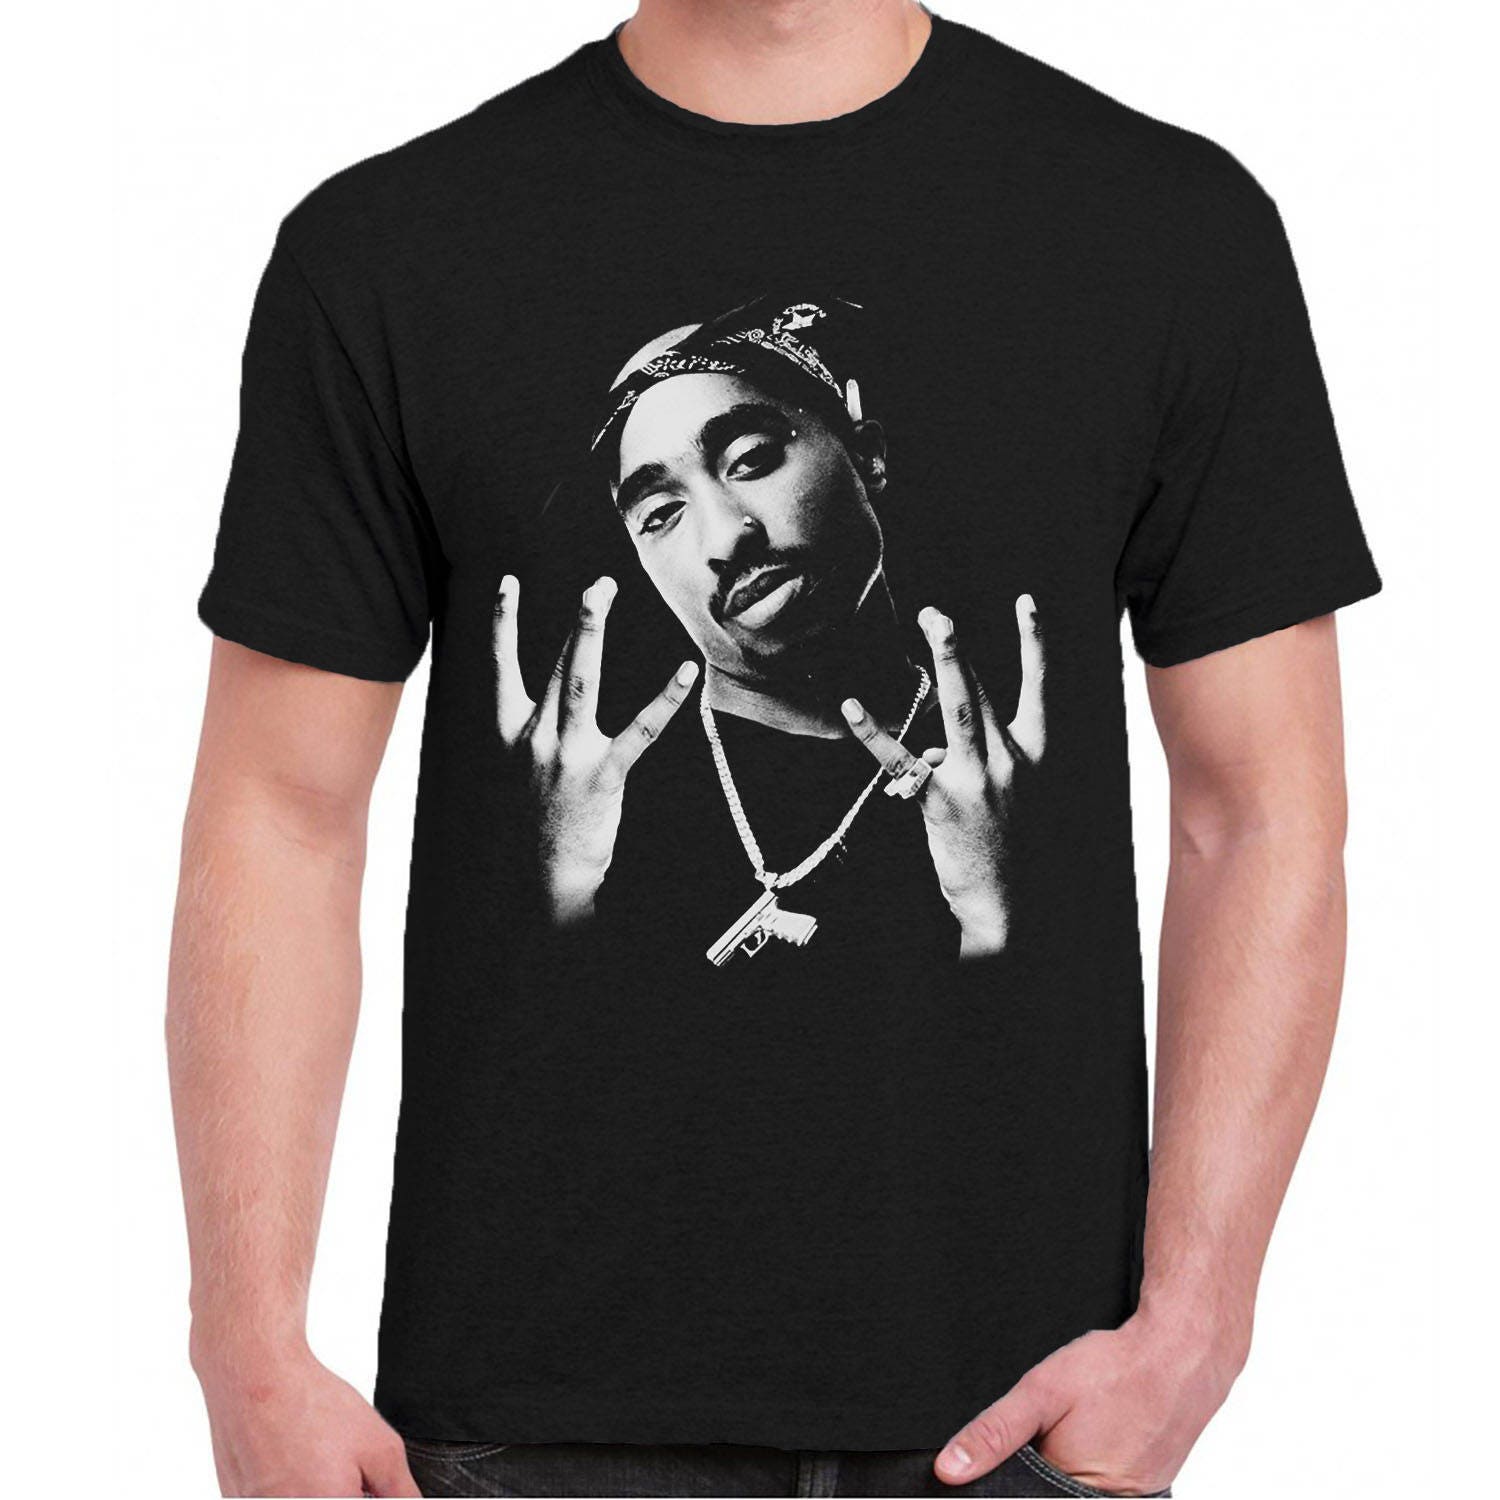 tupac-shakur-2pac-hip-hop-men-tee-shirt-t-shirts-black-dark-etsy